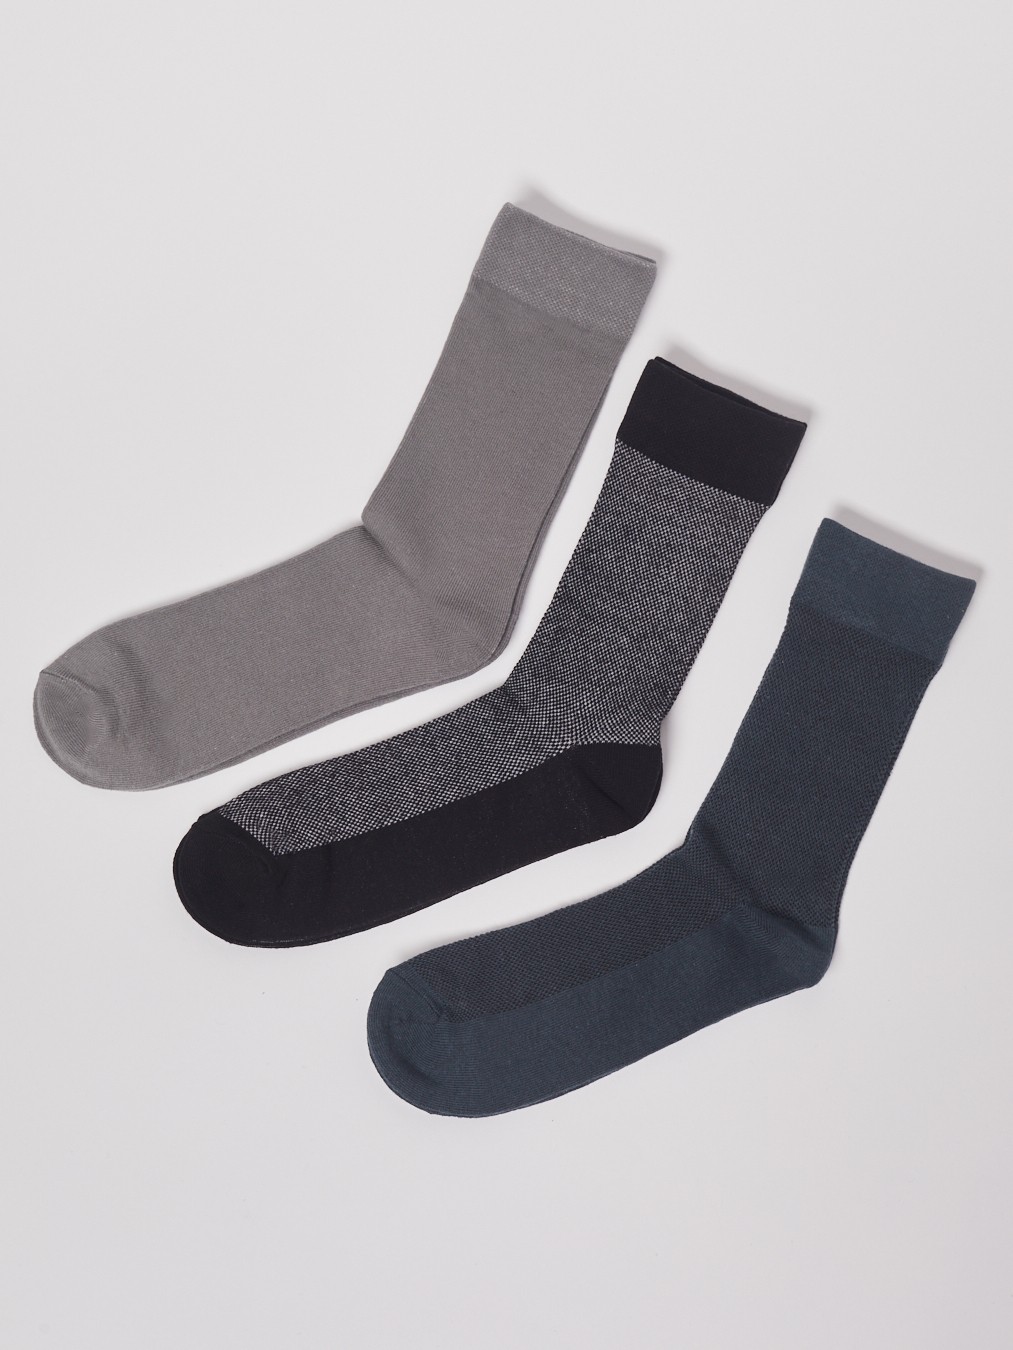 Набор высоких носков (3 пары в комплекте) zolla 01311995P155, цвет серый, размер 25-27 - фото 1